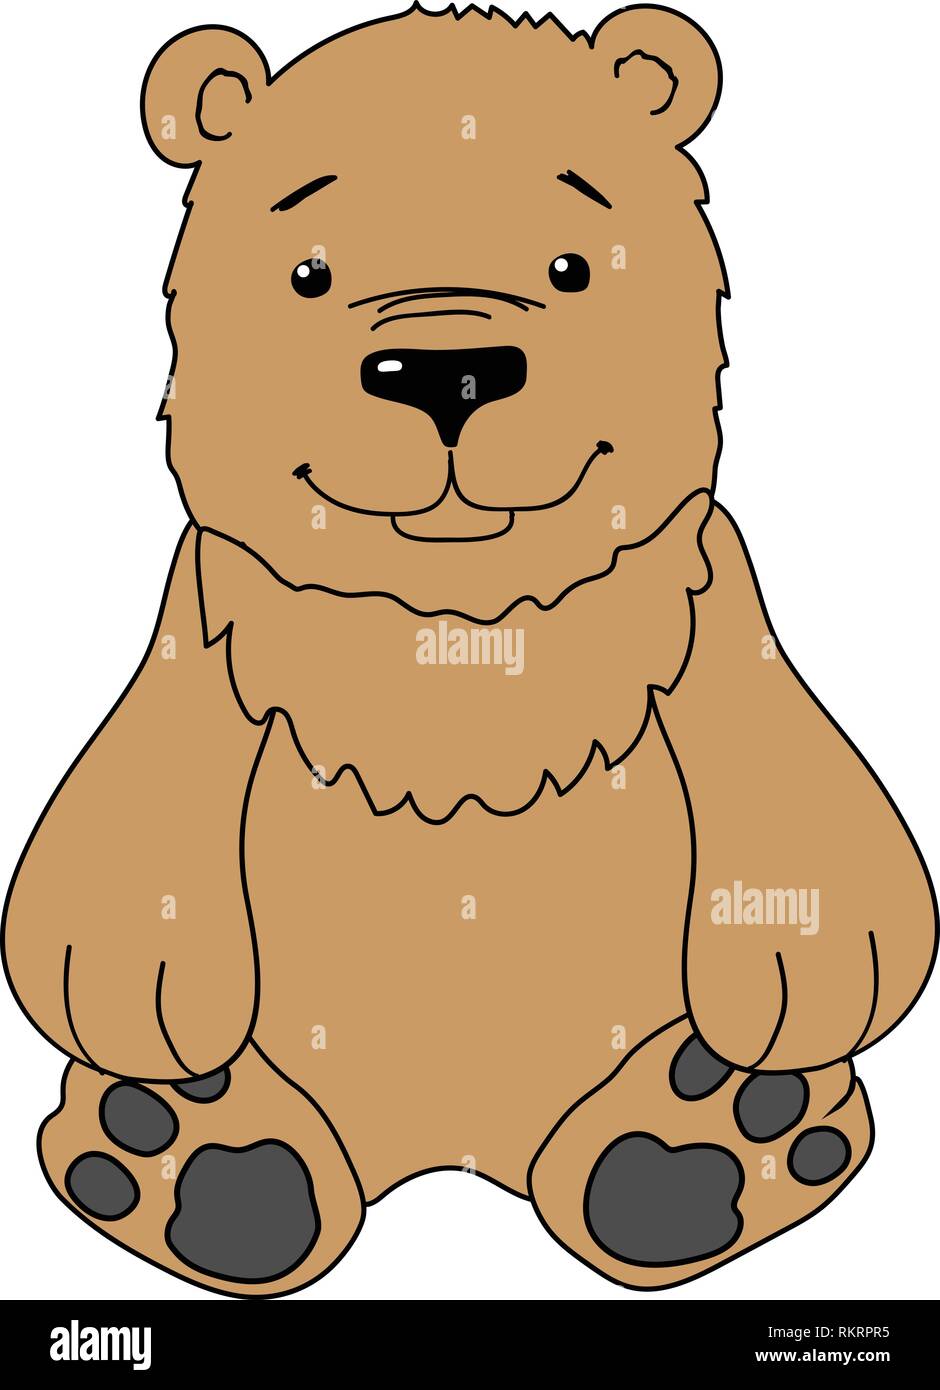 vector cartoon animal clipart sitting teddy bear Stock Vector Image & Art -  Alamy